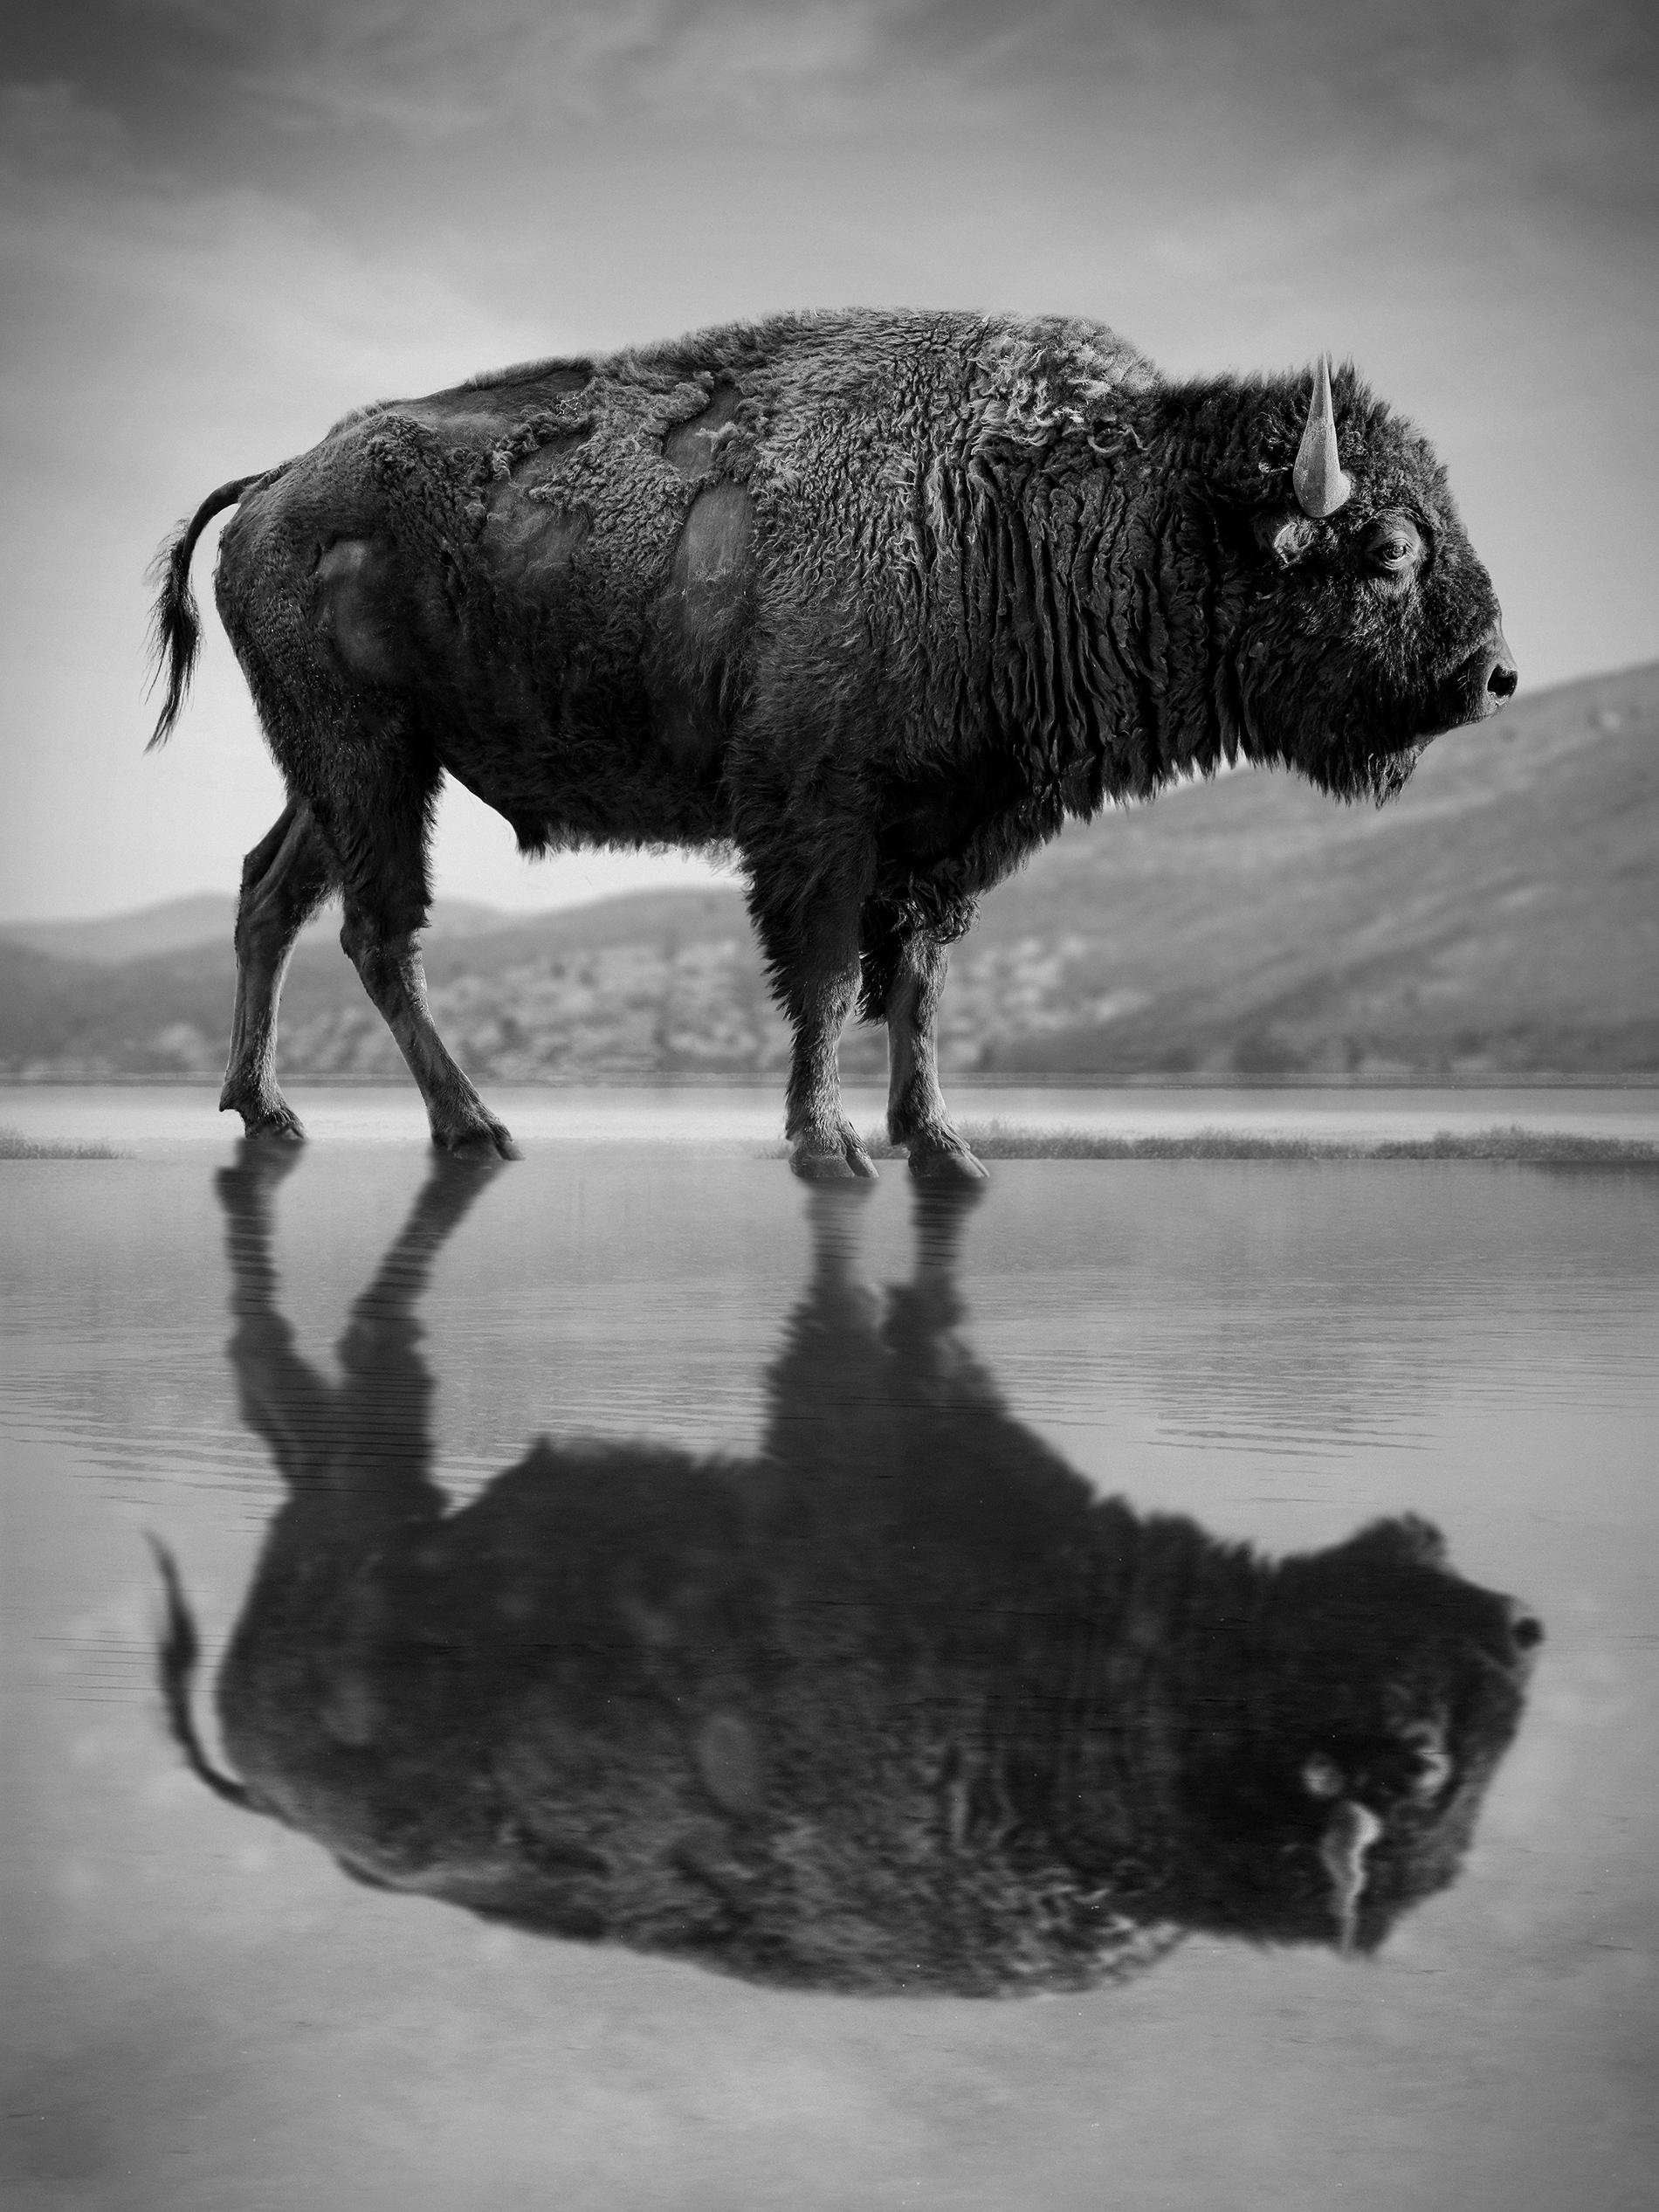 Black and White Photograph Shane Russeck - "Old World" 48x36 Photographie noir et blanc Bison  Photographie non signée de Buffalo